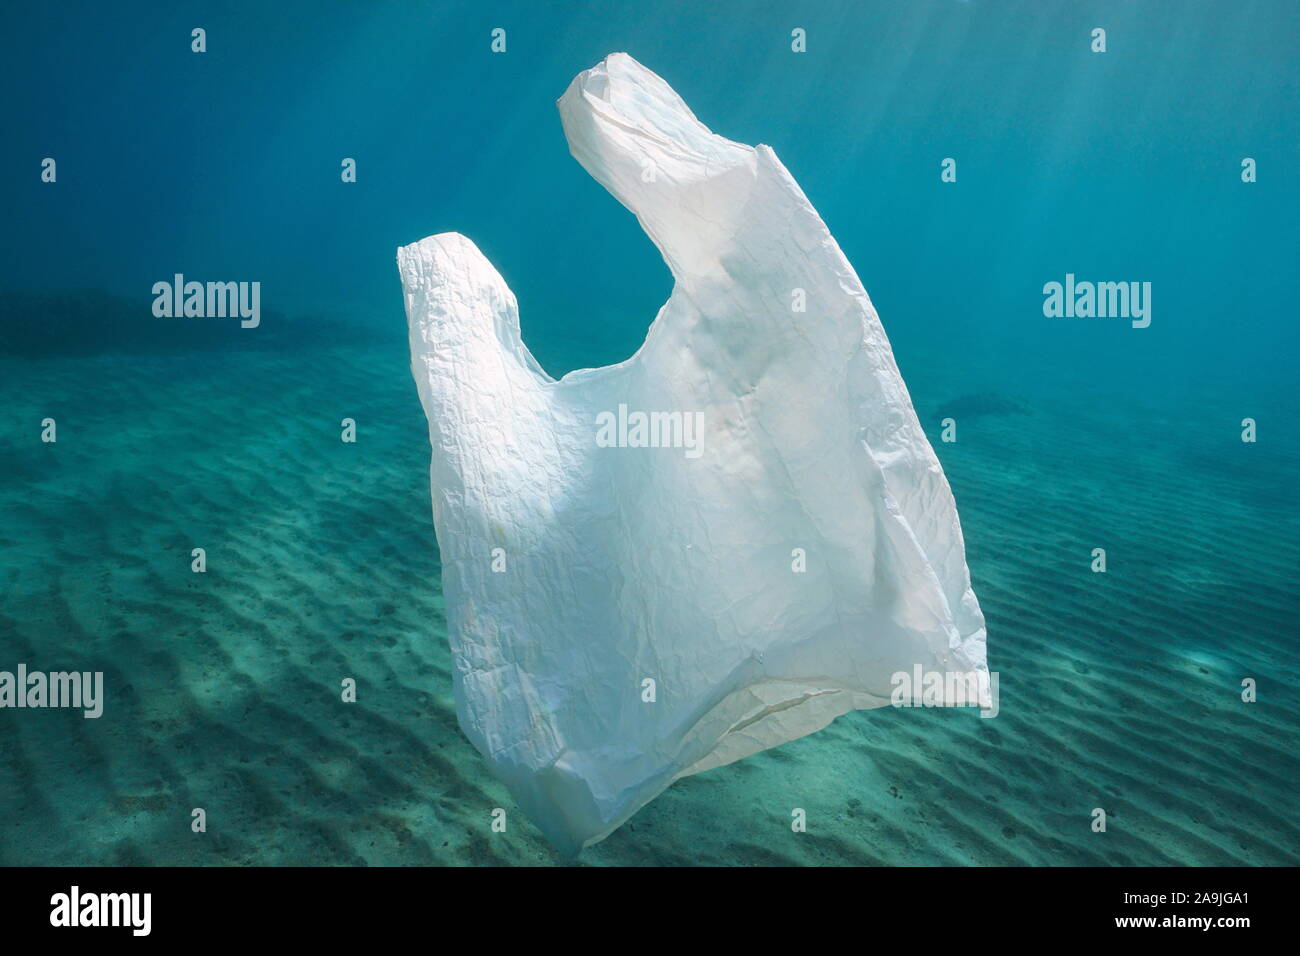 La pollution en plastique, un sac en plastique blanc sous l'eau dans l'océan Banque D'Images